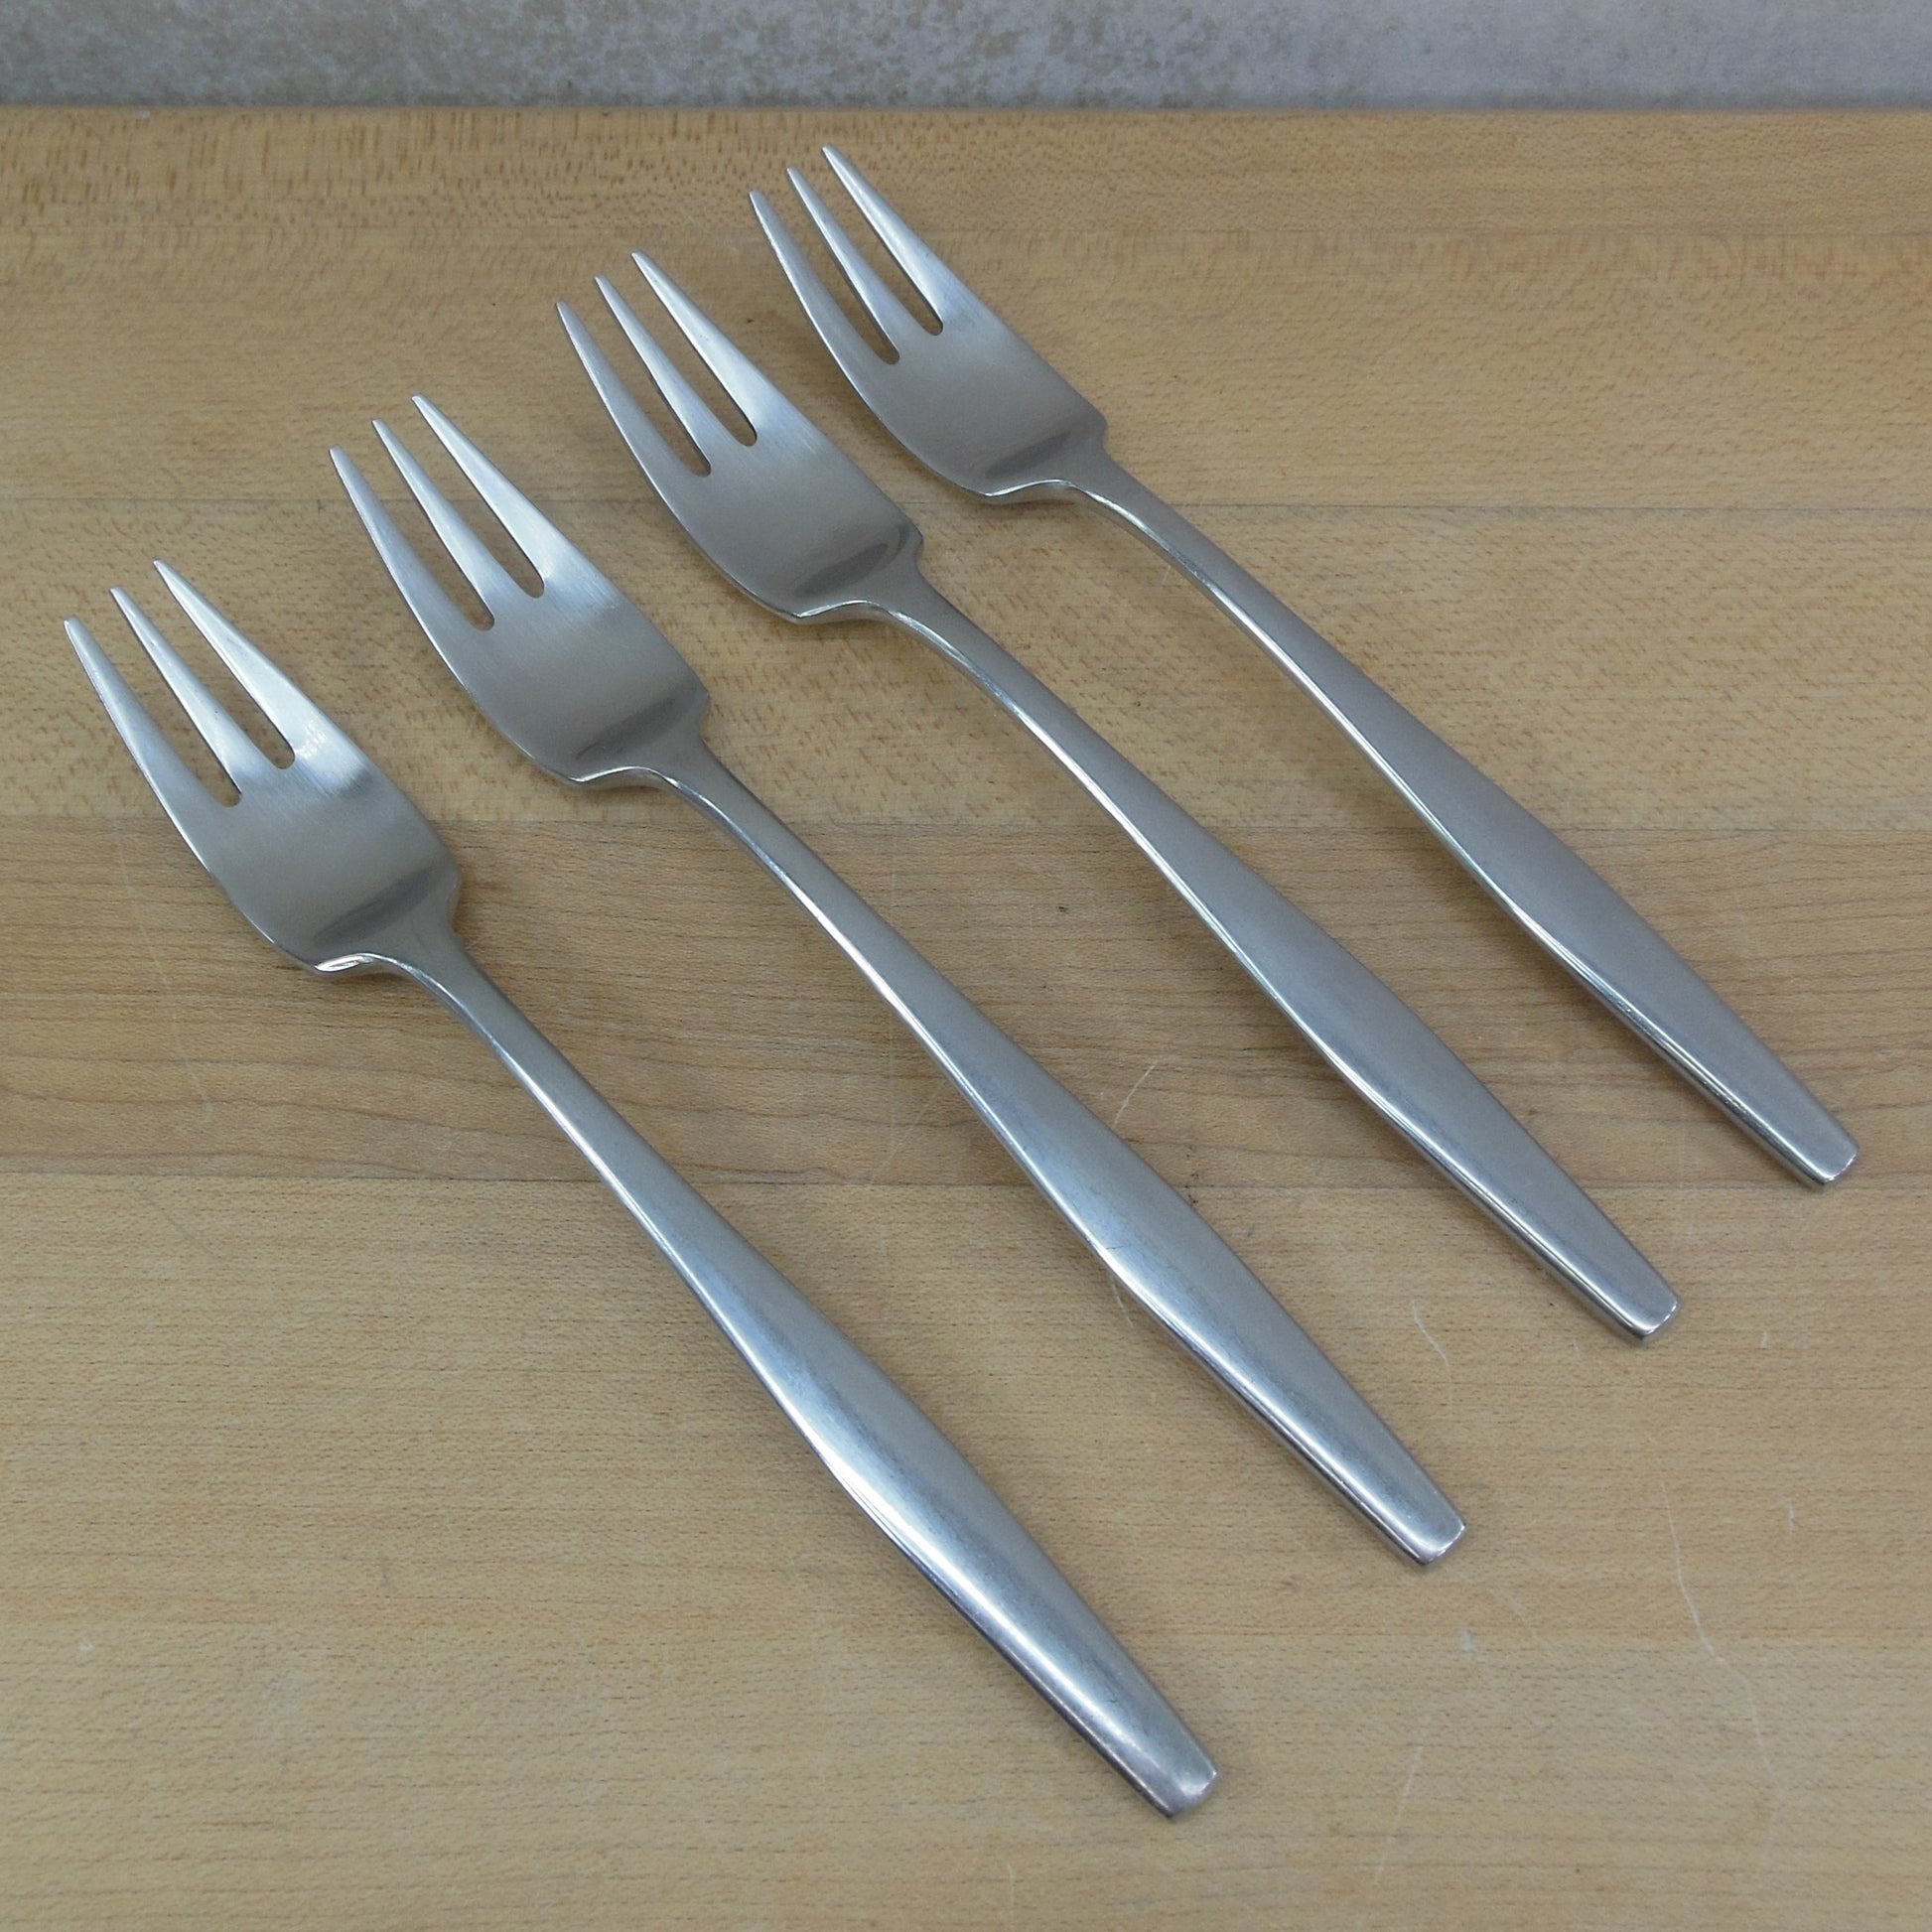 Dansk Variation V Japan Stainless Flatware - 4 Salad Forks